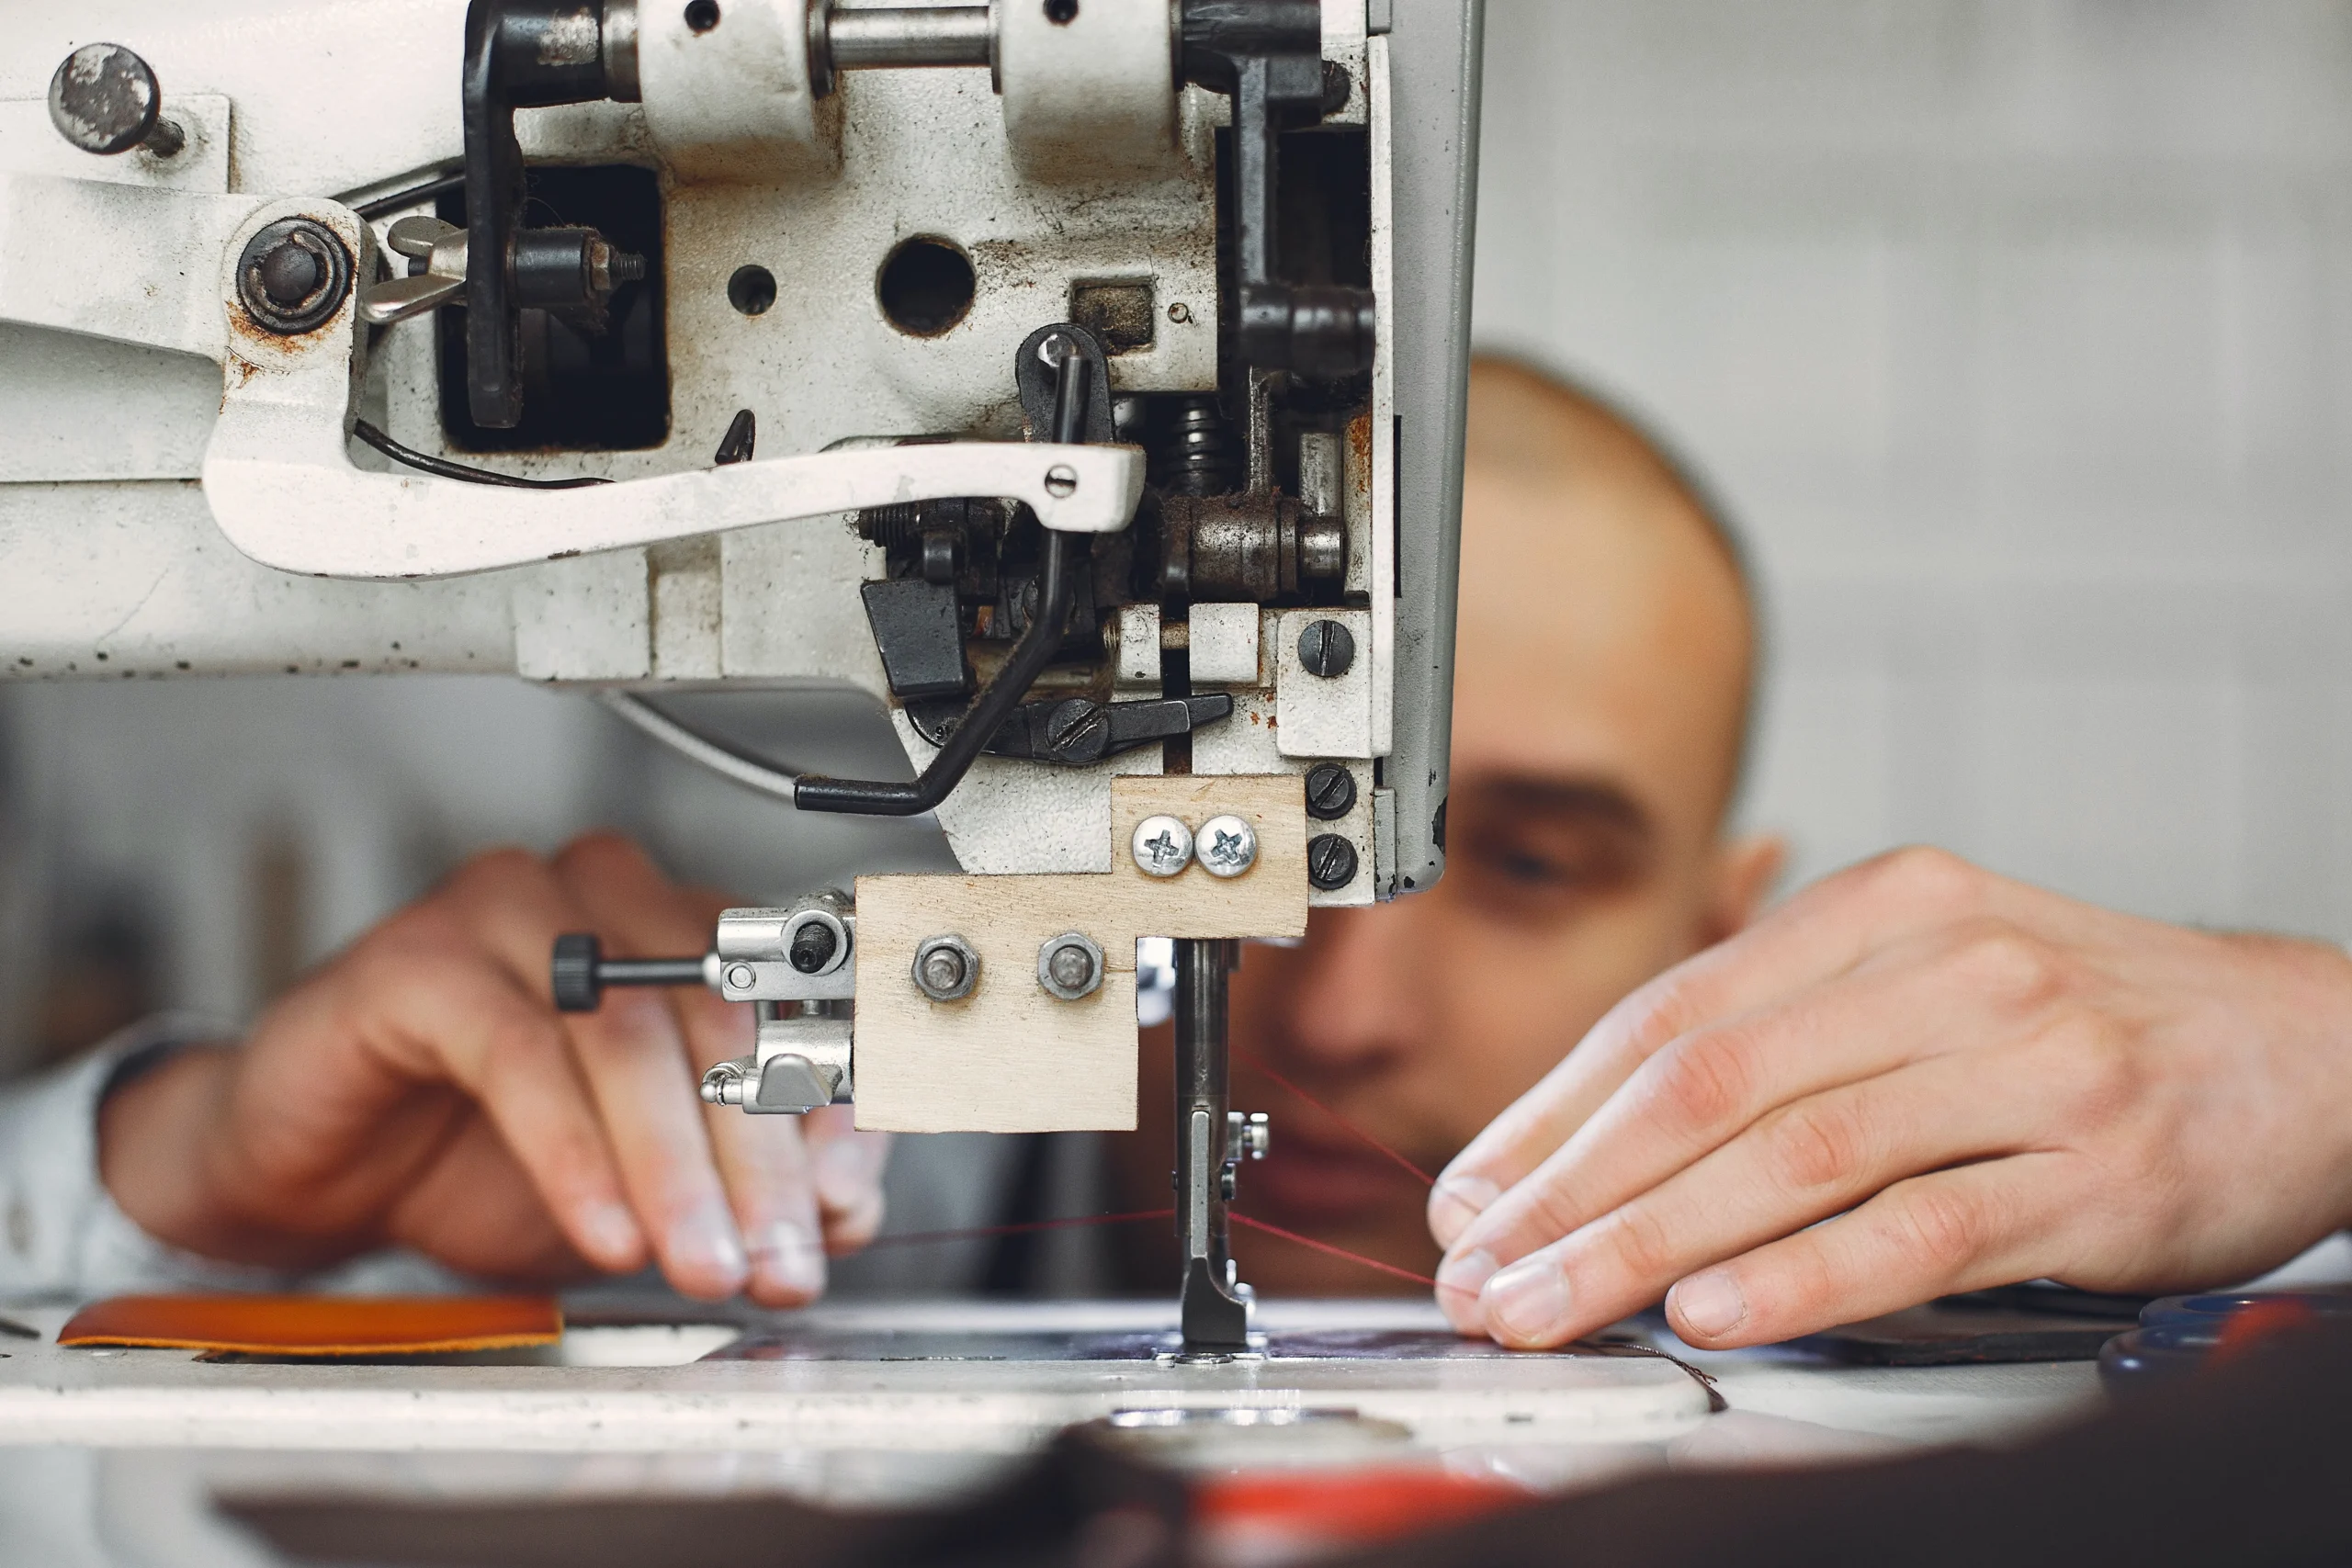 Ventajas de una maquina de coser industrial en tu negocio